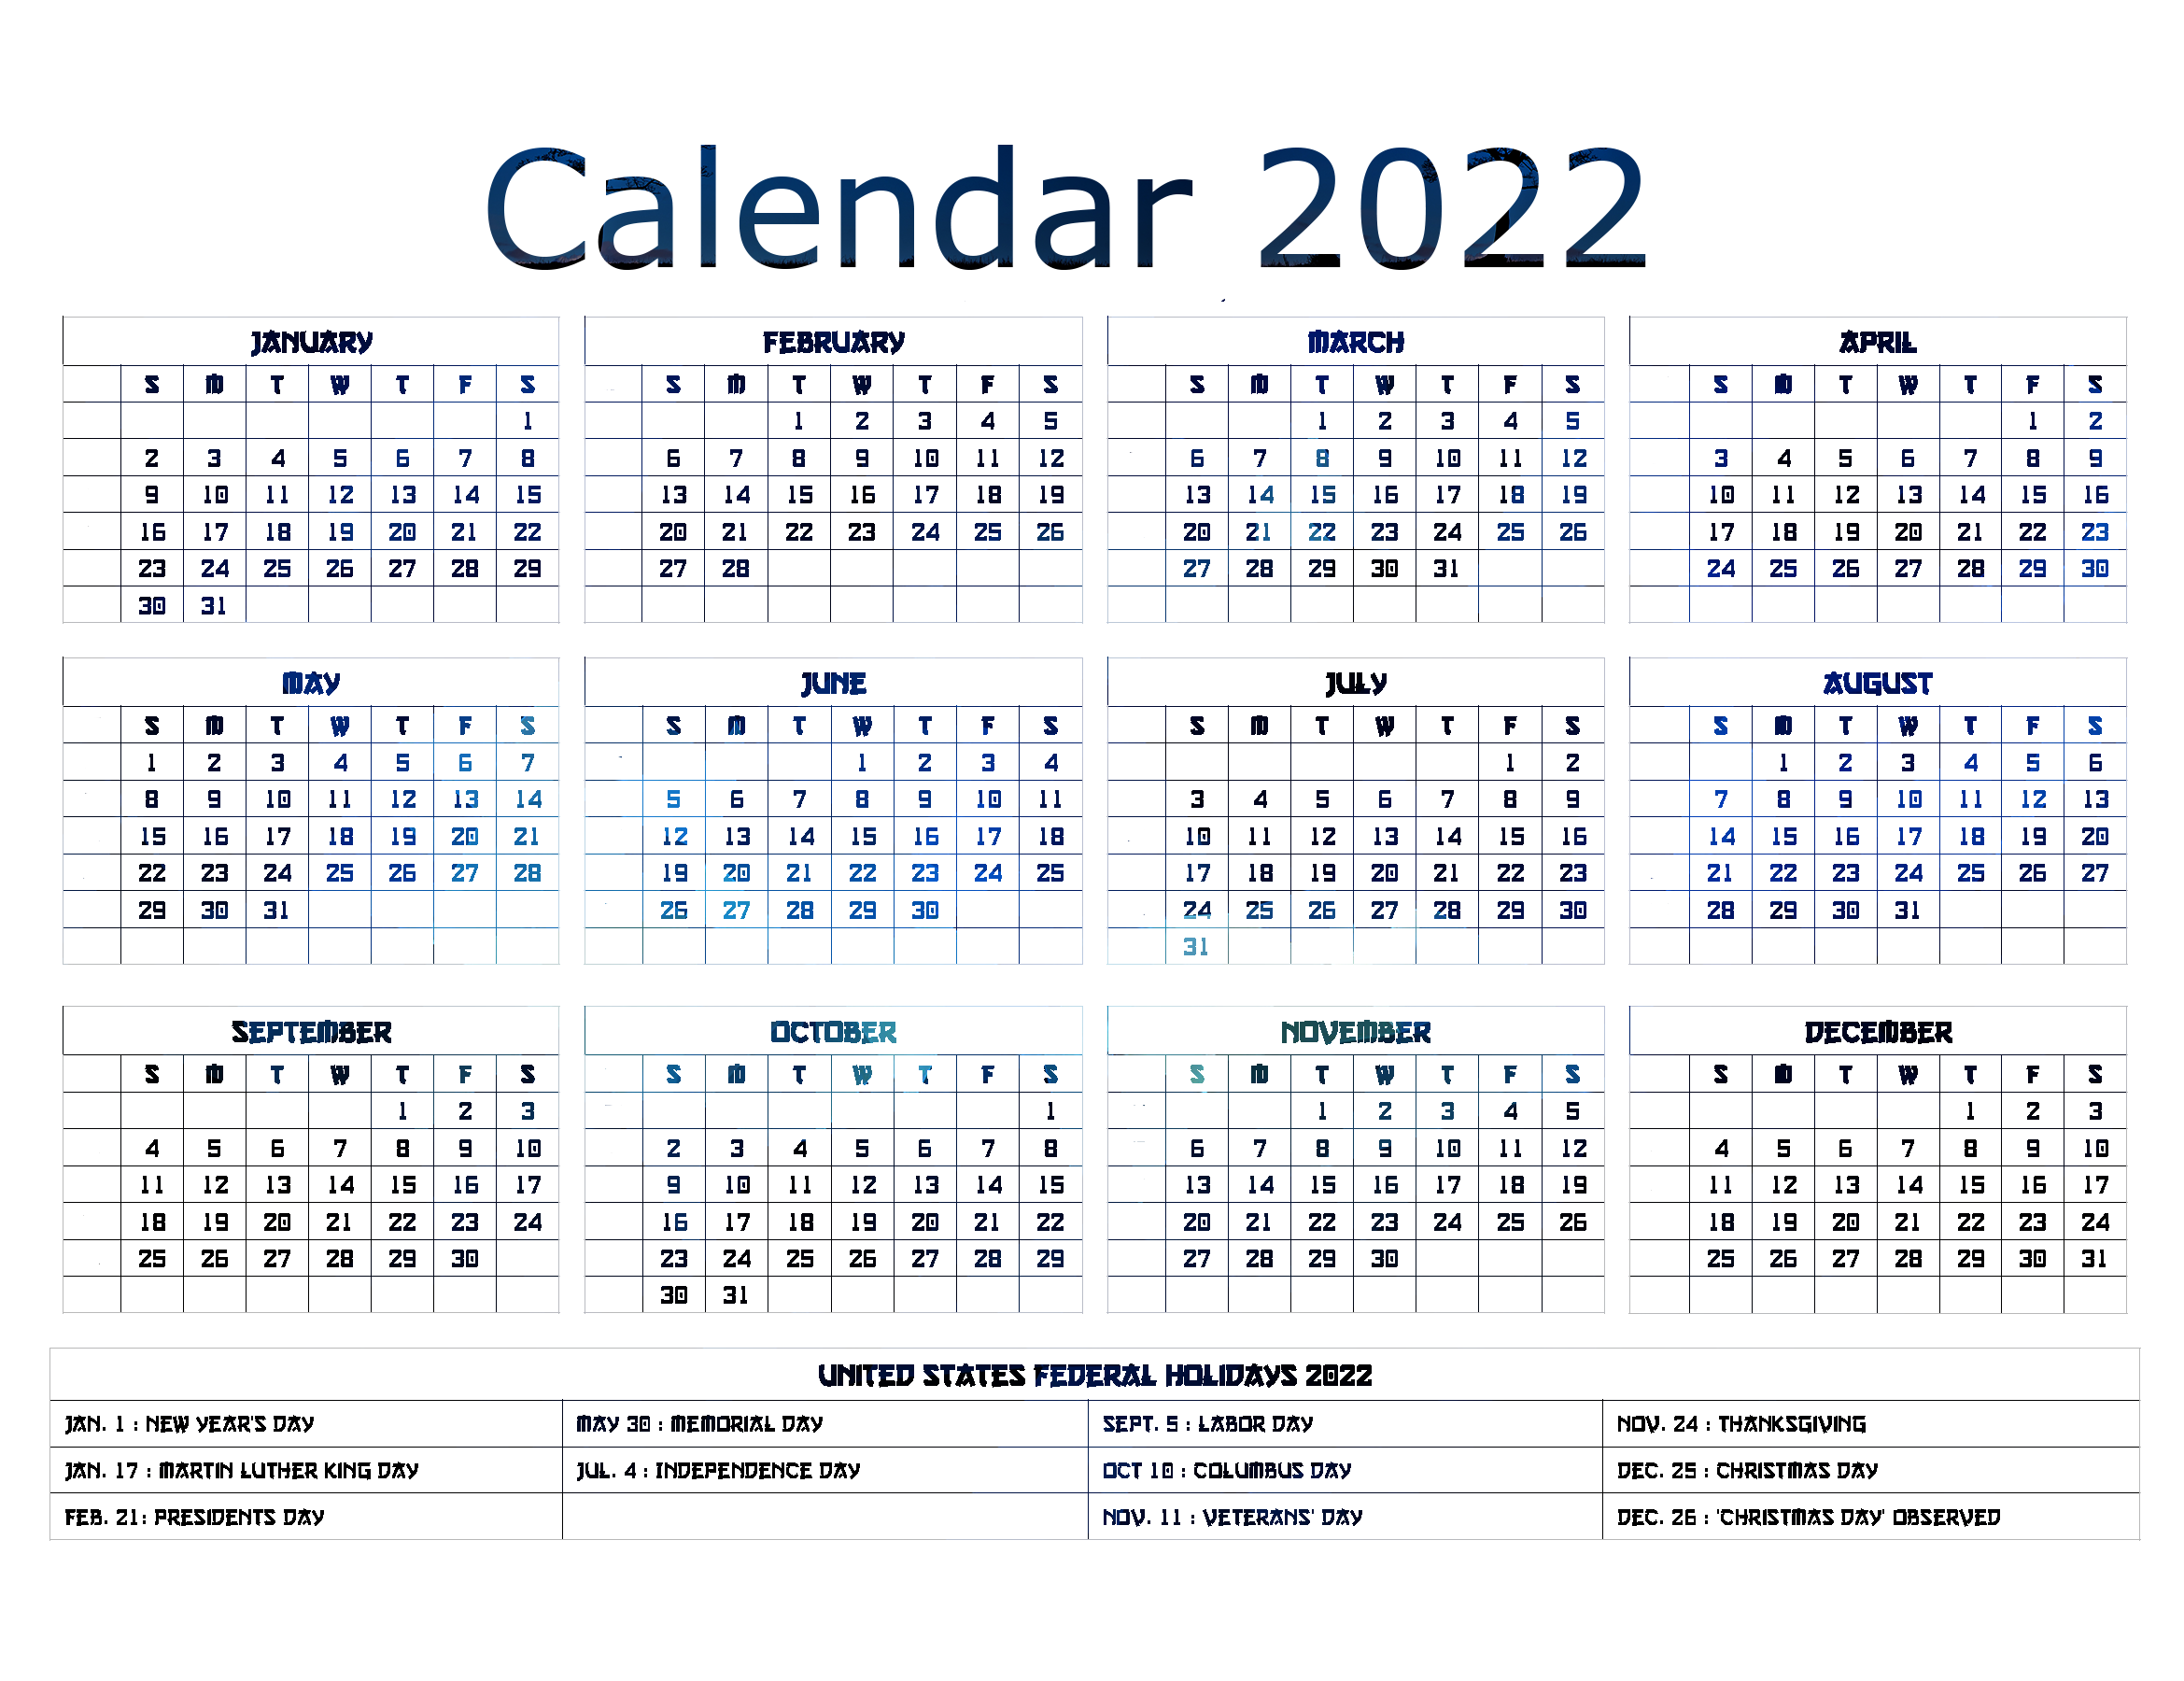 カレンダー2022